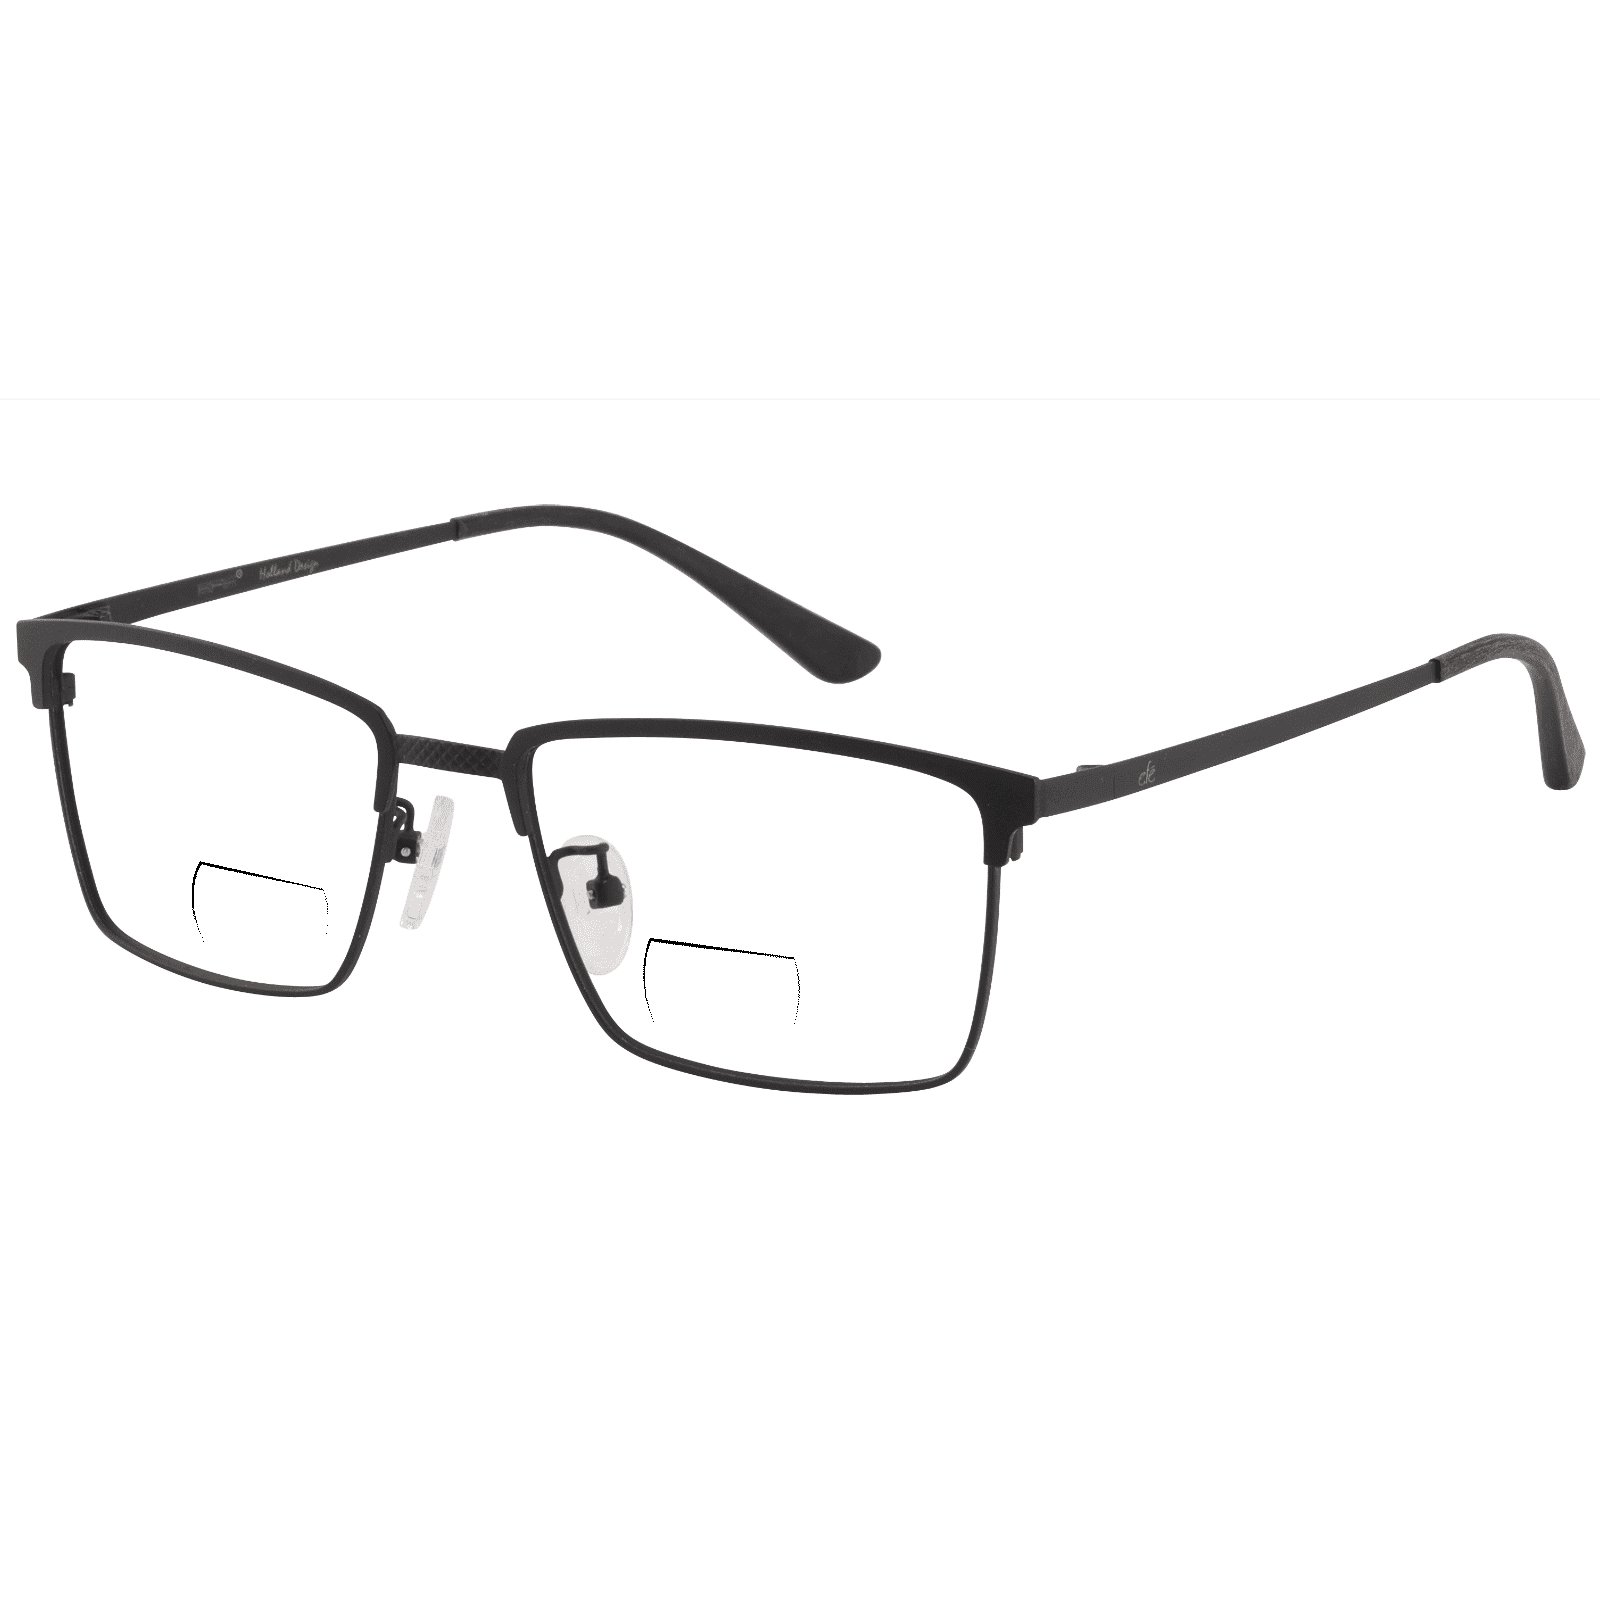 Euston - Rectangle Black Reading Glasses for Men